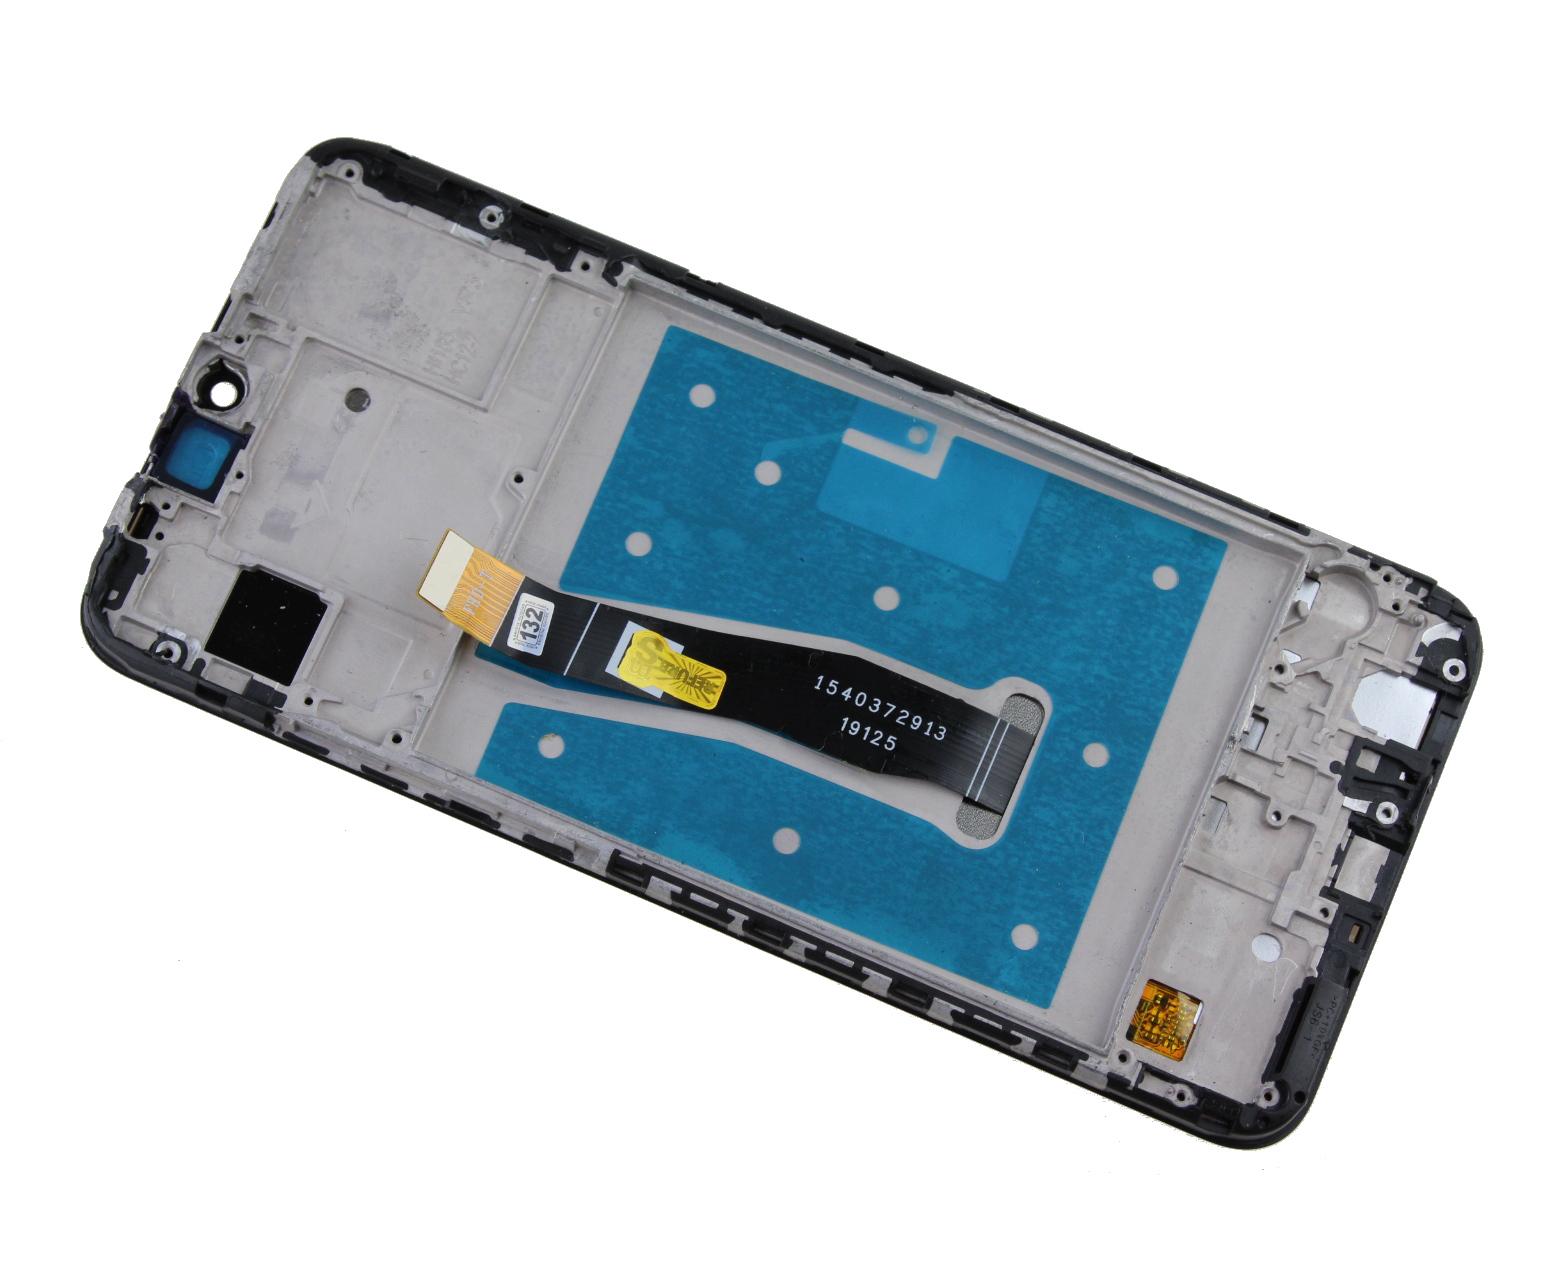 Originál LCD + Dotyková vrstva Huawei P Smart 2019 černá repasovaný díl - vyměněné sklíčko